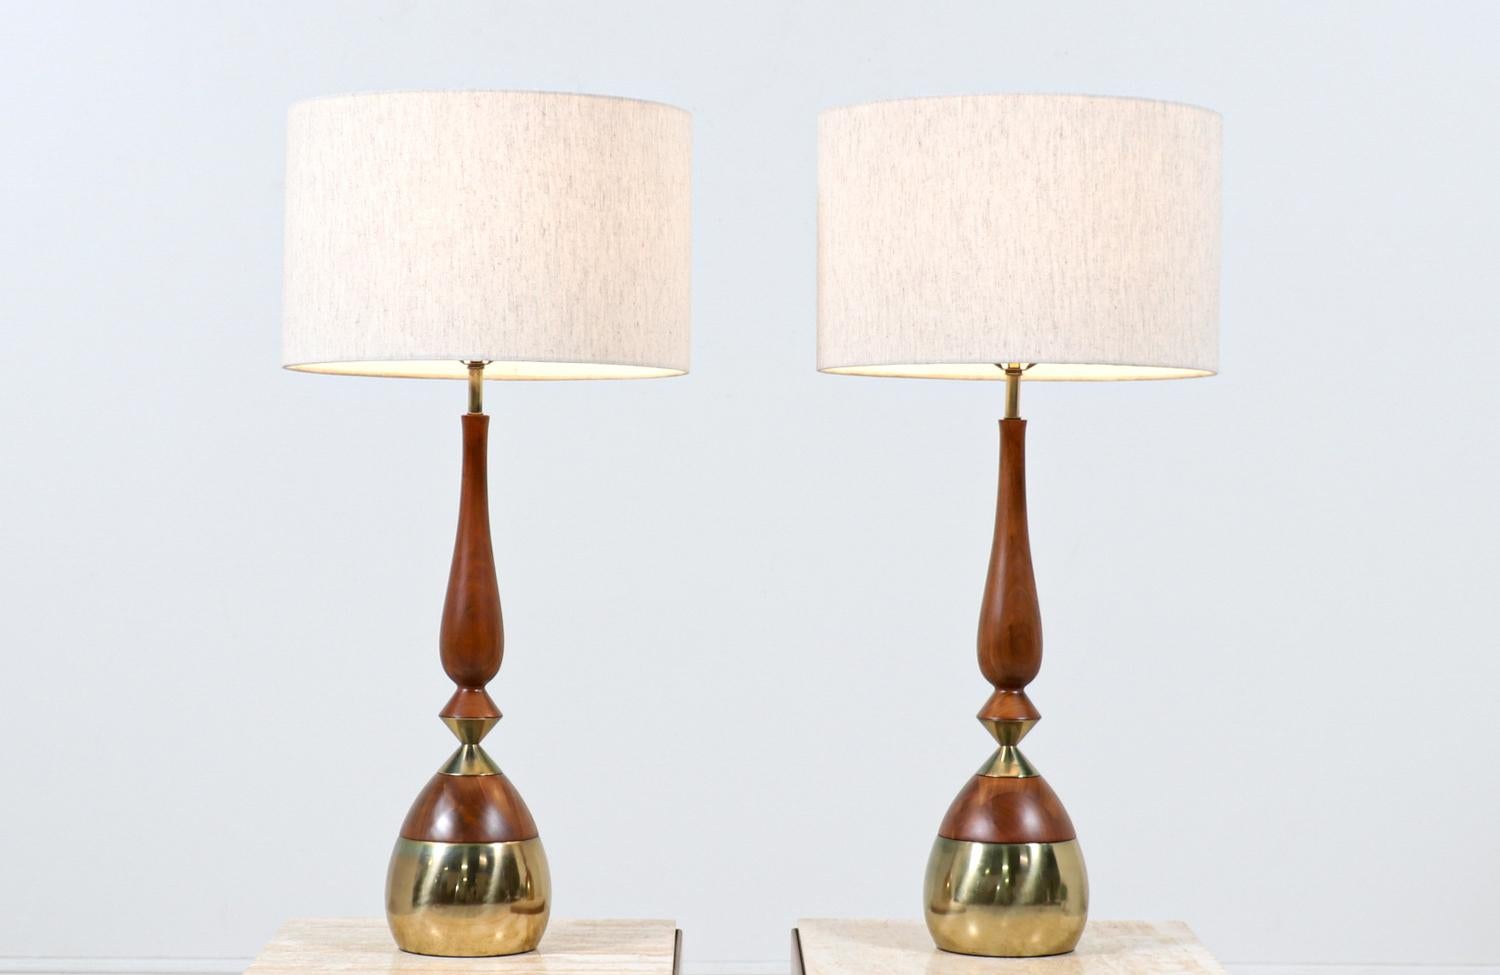 Paire de lampes de table conçues par Tony Paul pour Westwood Industries aux États-Unis vers les années 1950. Ces lampes de forme organique présentent un corps en bois de noyer avec des détails en laiton poli sur la base et le milieu, créant un